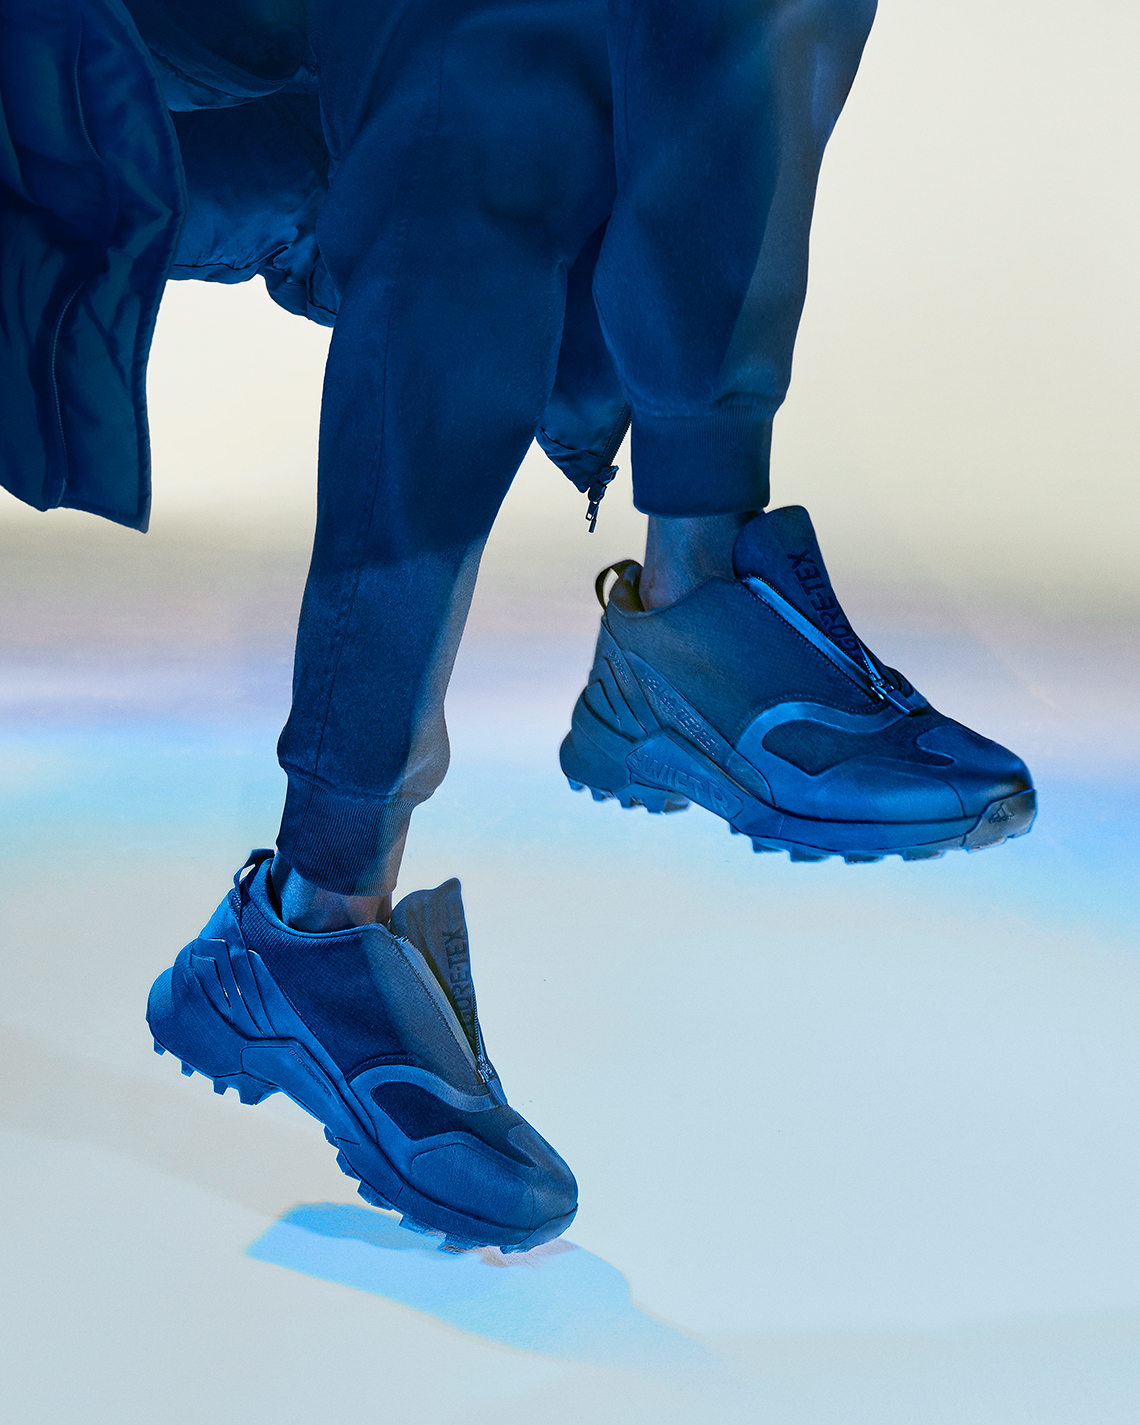 adidas Y-3 Footwear adidas terrex y3 Preview Fall/Winter 2022 | SneakerNews.com